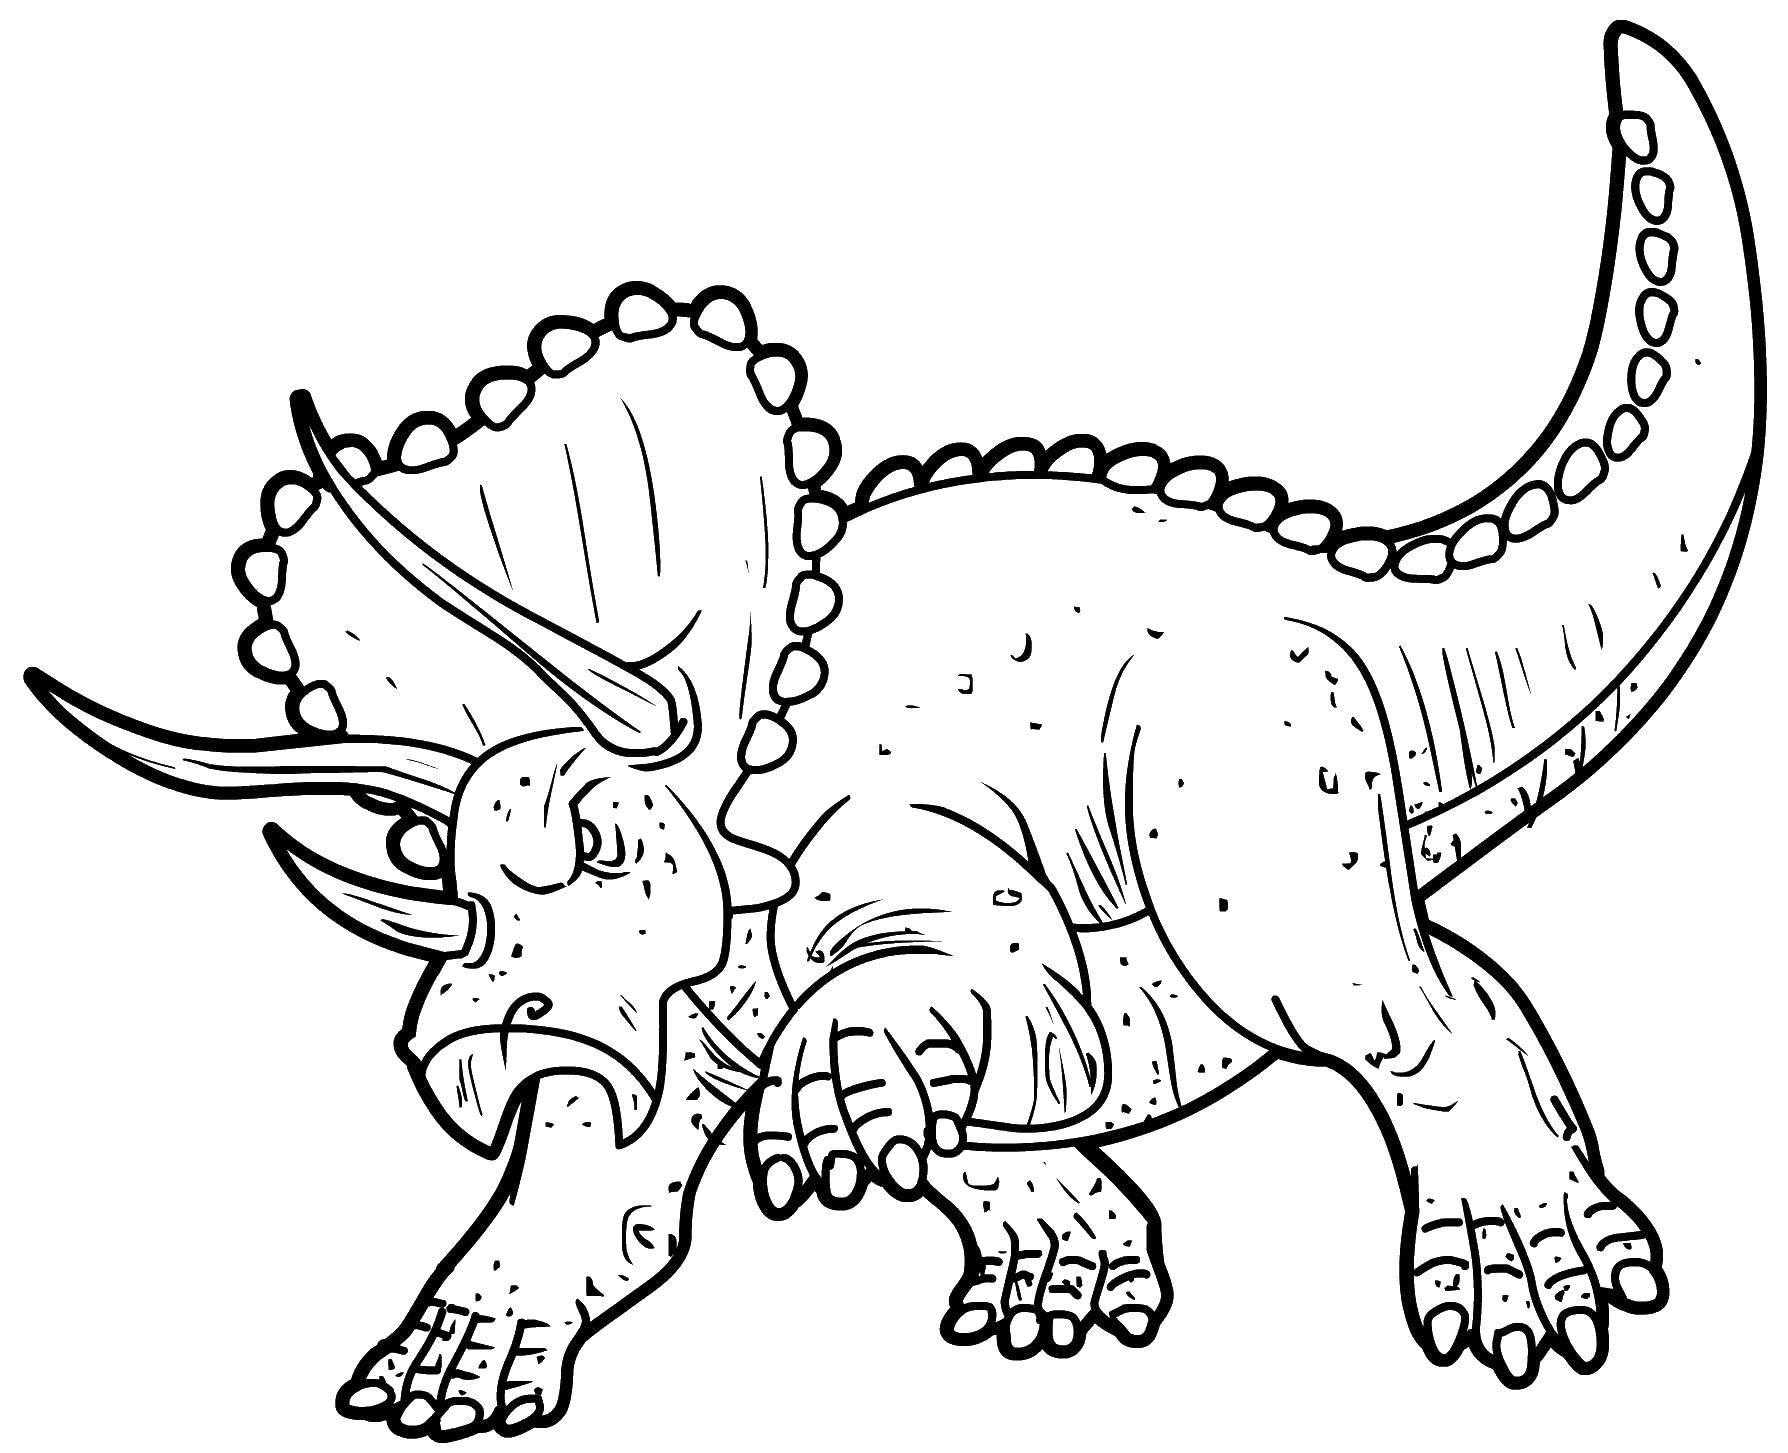 Раскраски Поезд динозавров Раскраски из мультфильма про динозавров, которые на поезде путешествую во времени по мезозойской эре